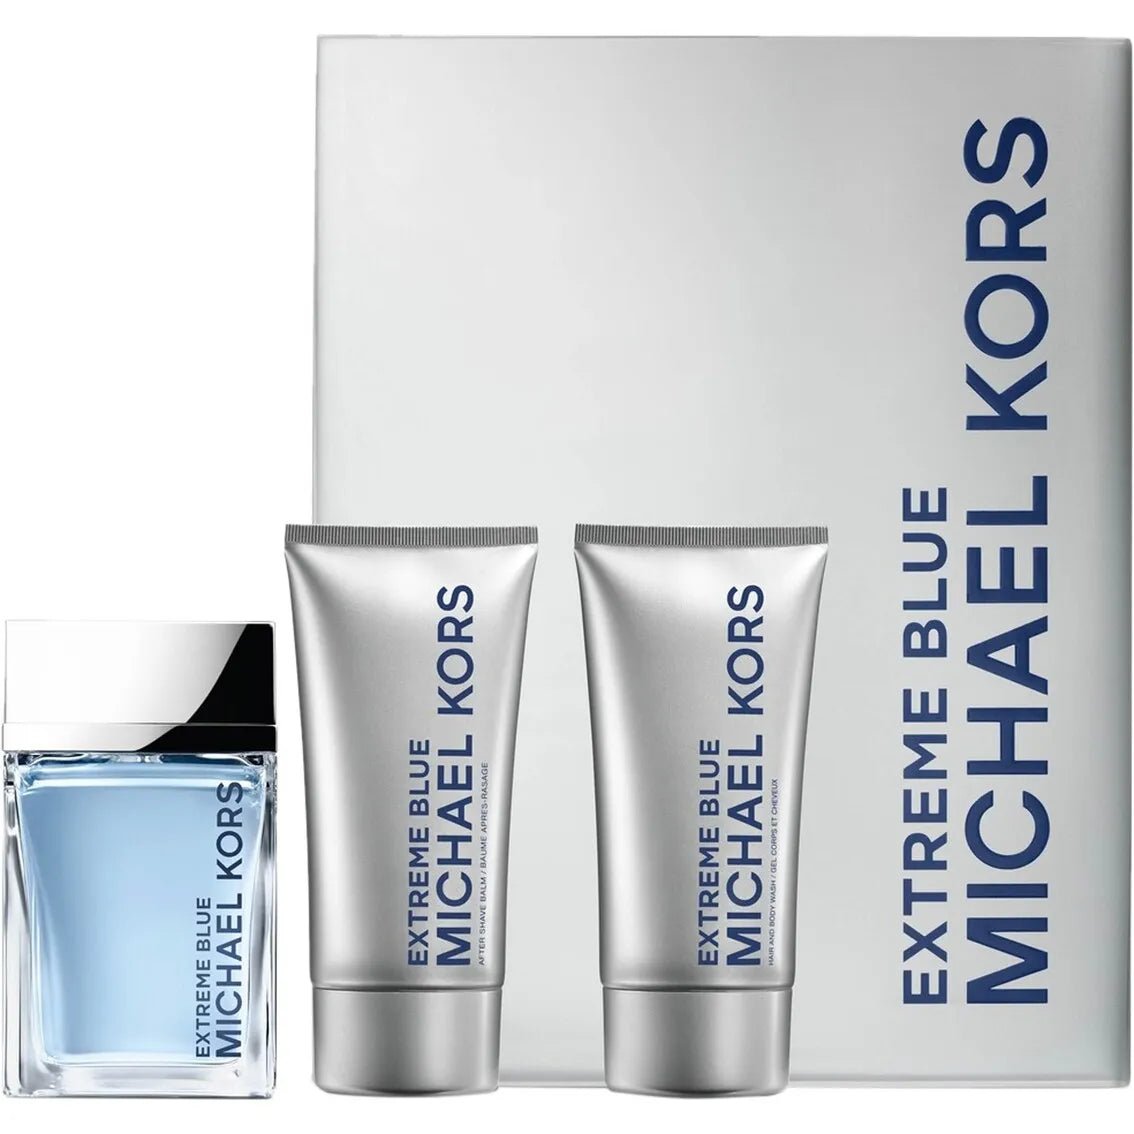 Michael Kors Extreme Blue 120ml Eau De Toilette (EDT) Spray